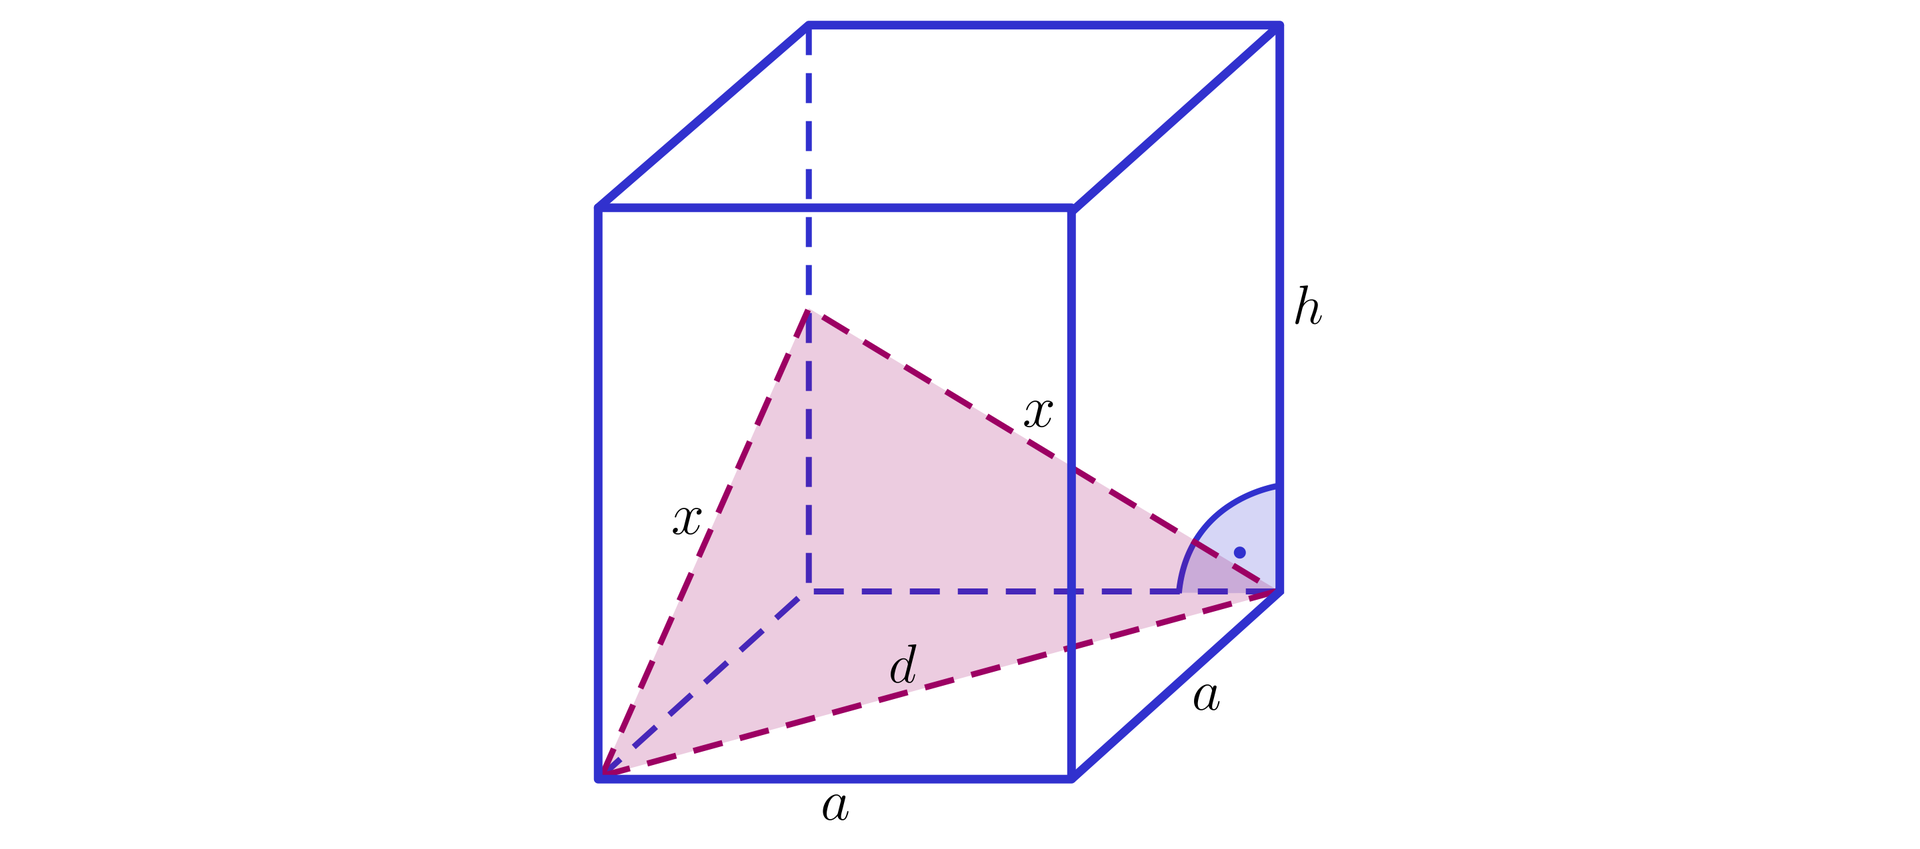 Na ilustracji przedstawiono graniastosłup prosty o podstawie kwadratu. Długości krawędzi podstawy oznaczono literą a, natomiast długość krawędzi bocznej oznaczono h. Zaznaczono przekrój graniastosłupa, którego płaszczyznę stanowi trójkąt równoramienny. Podstawa trójkąta jest przekątną podstawy graniastosłupa, natomiast ramiona są przeciwprostokątnymi trójkątów prostokątnych o przyprostokątnych a i jedna druga h. Długości ramion trójkąta oznaczono literą x, natomiast długość podstawy literą d.